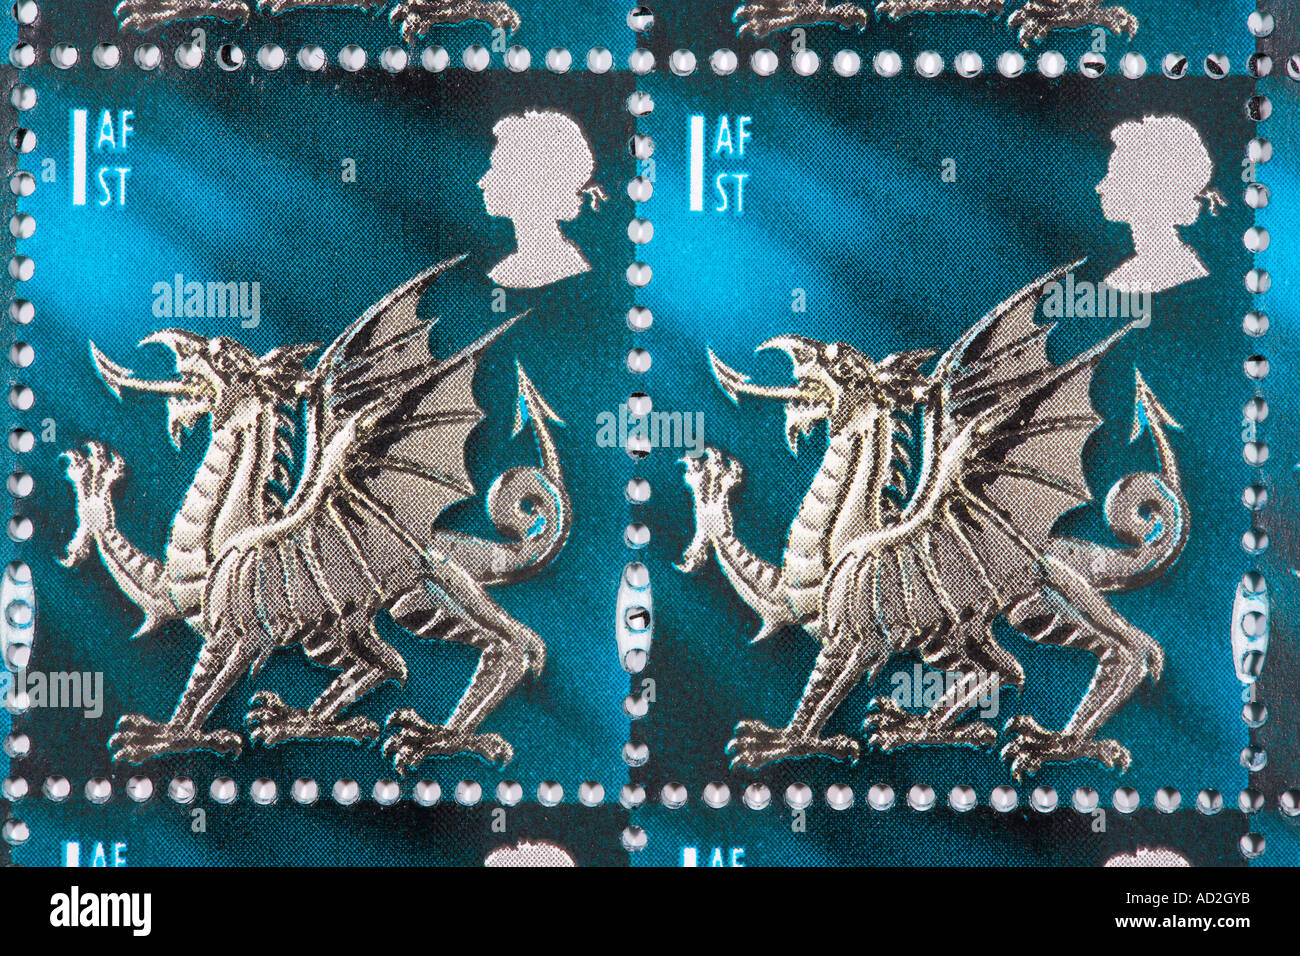 Les timbres de première classe gallois Banque D'Images